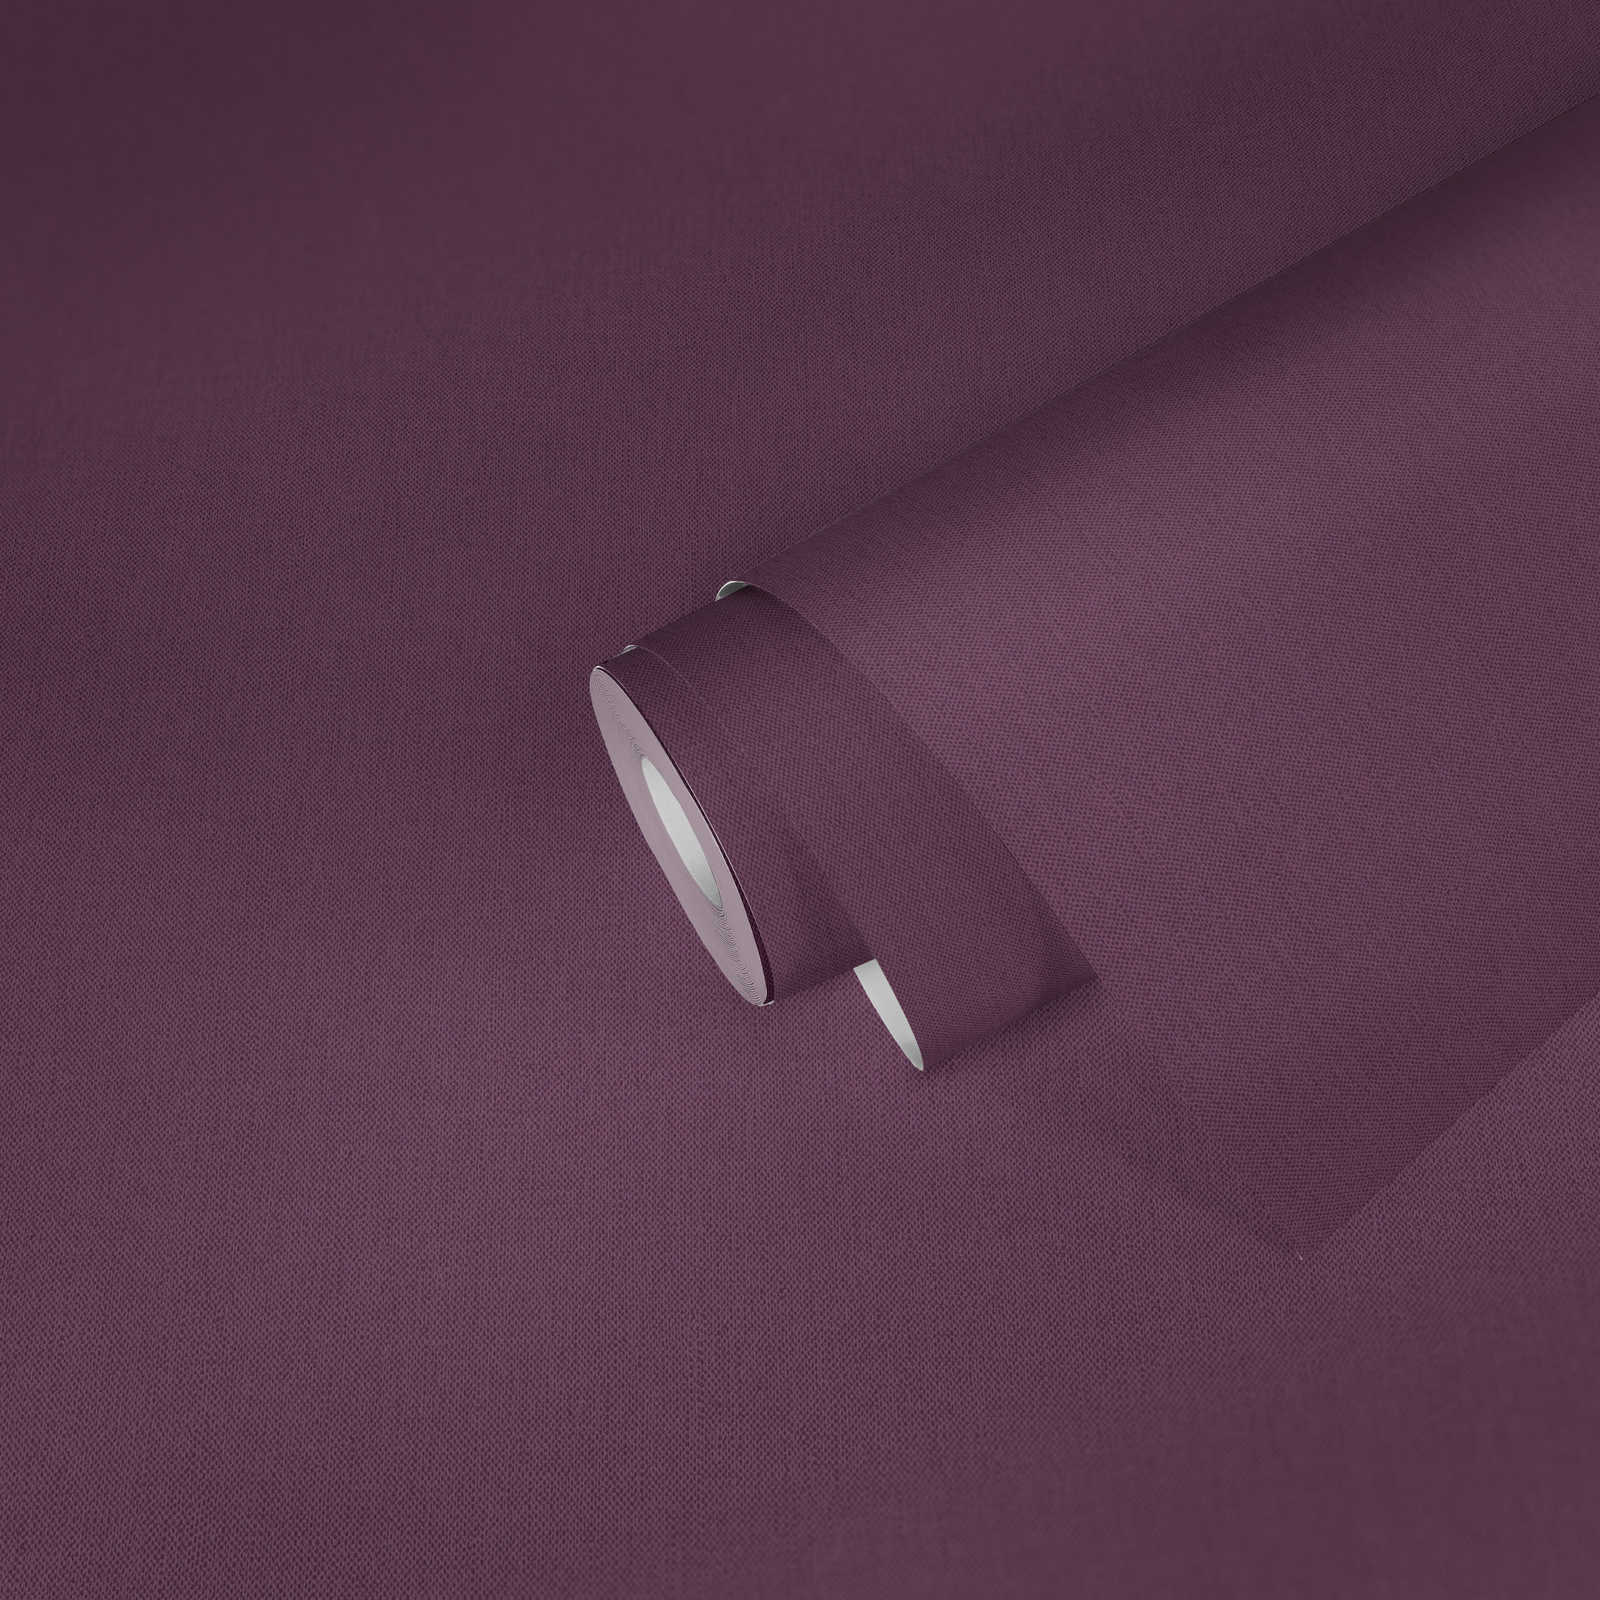             Violet papier peint uni, mat aspect textile & structure tissée
        